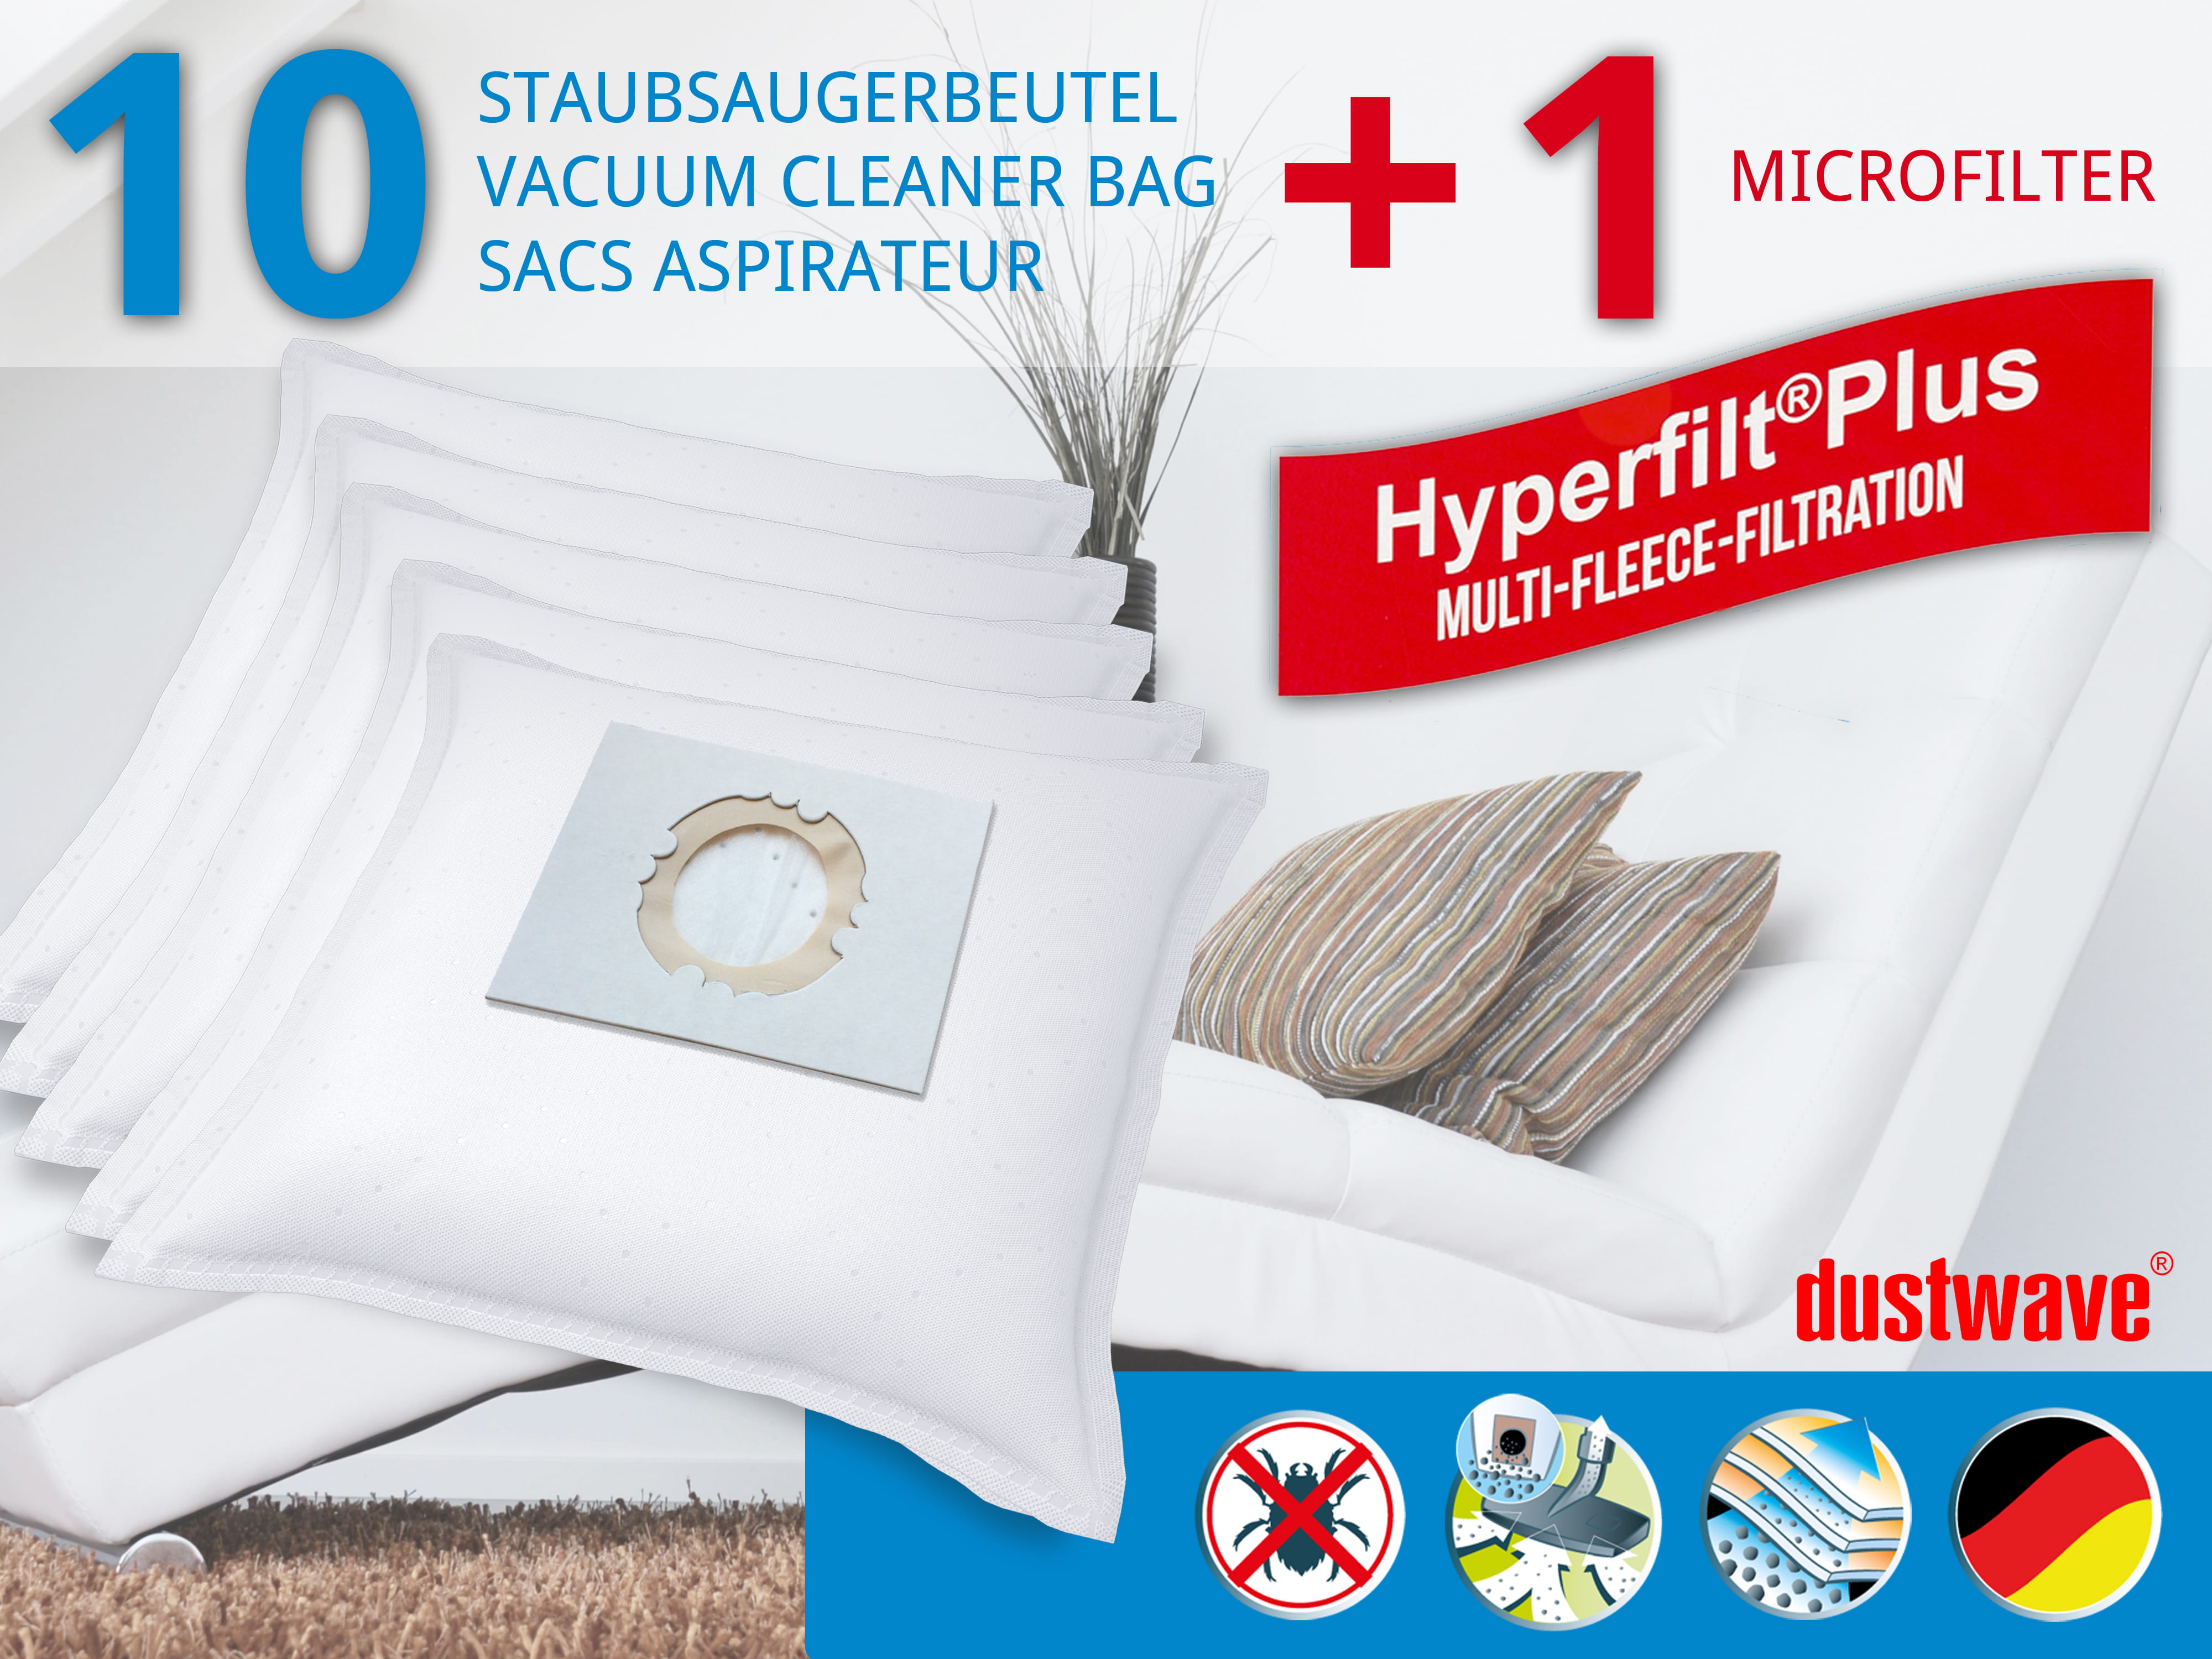 Dustwave® 10 Staubsaugerbeutel für Hoover BD S2053 021 - hocheffizient, mehrlagiges Mikrovlies mit Hygieneverschluss - Made in Germany